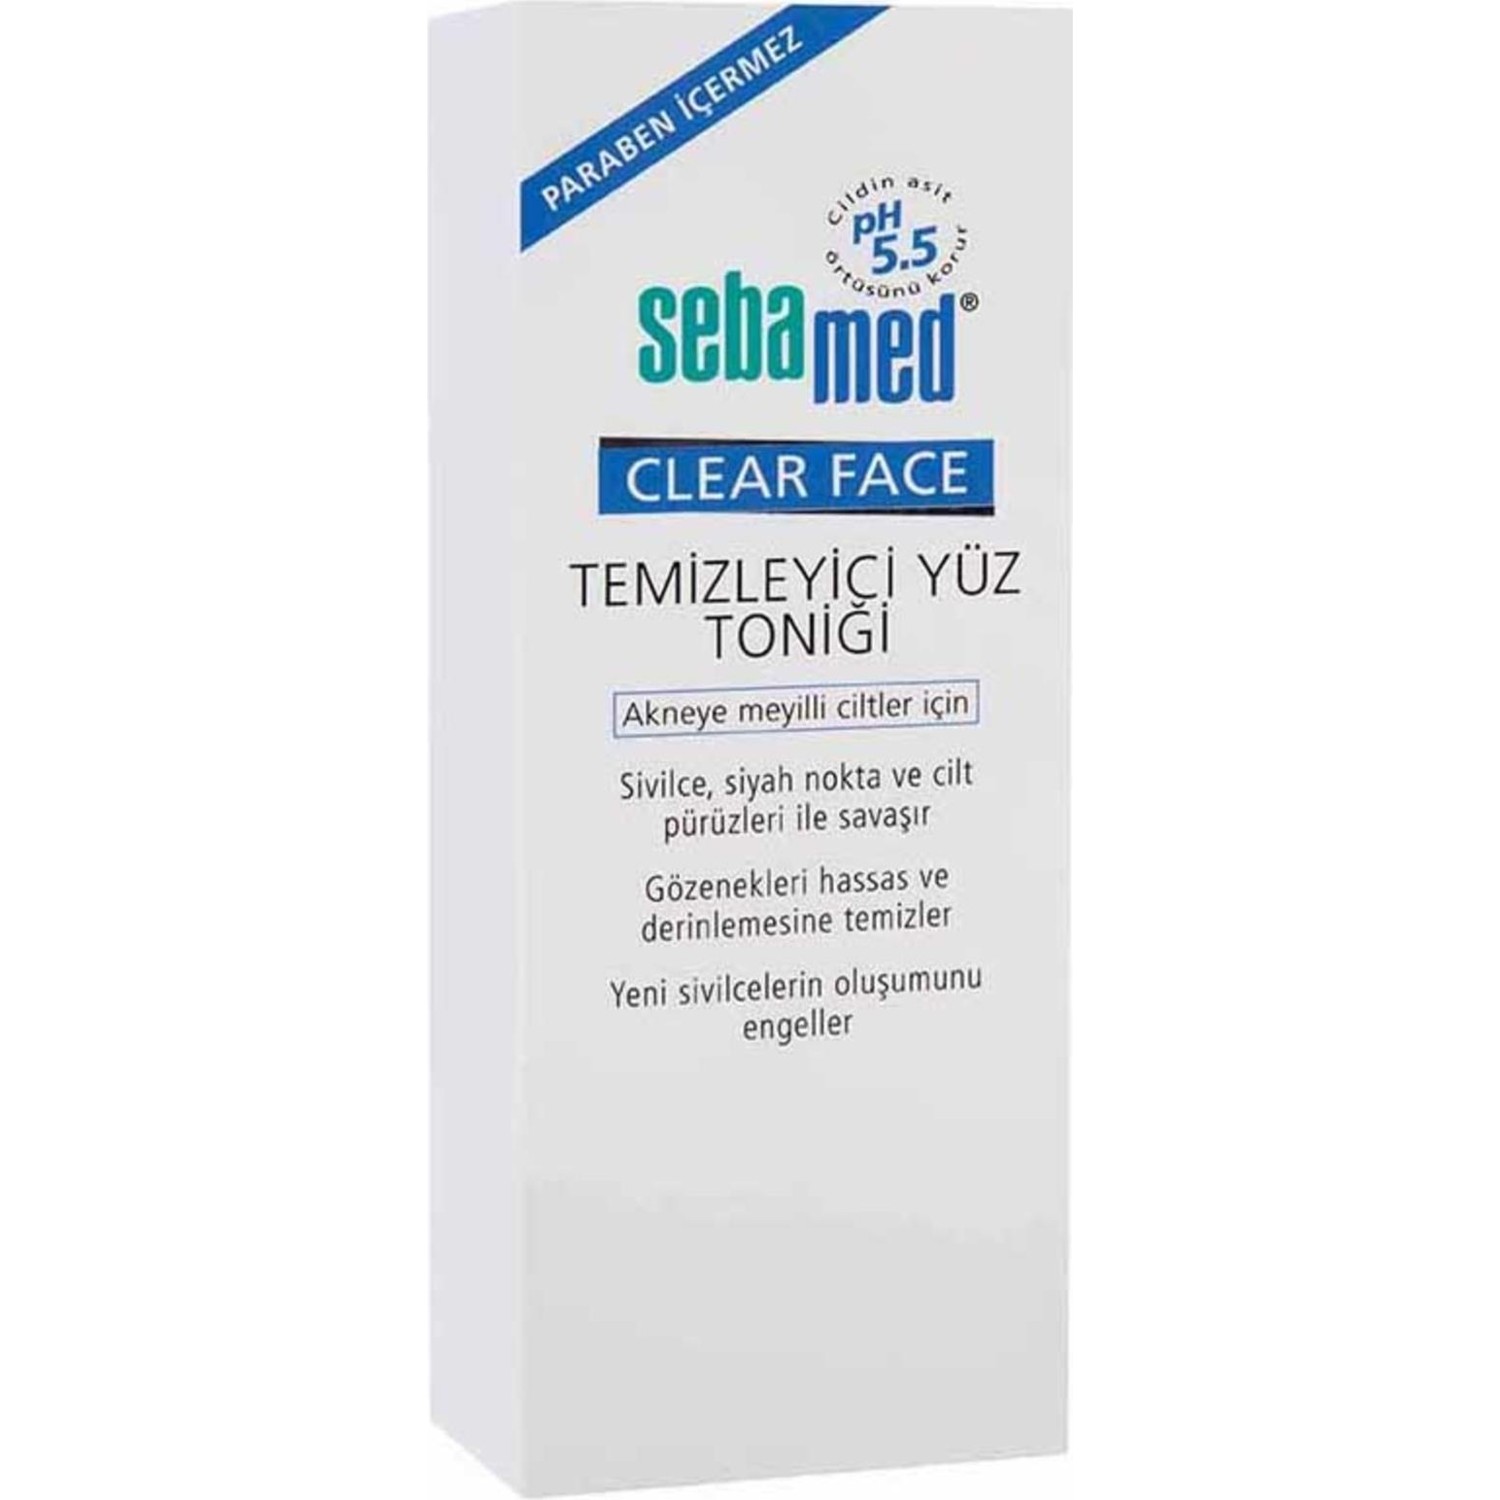 Очищающий тоник для лица Sebamed Clear Face, 150 мл очищающий набор для лица sebamed clear face